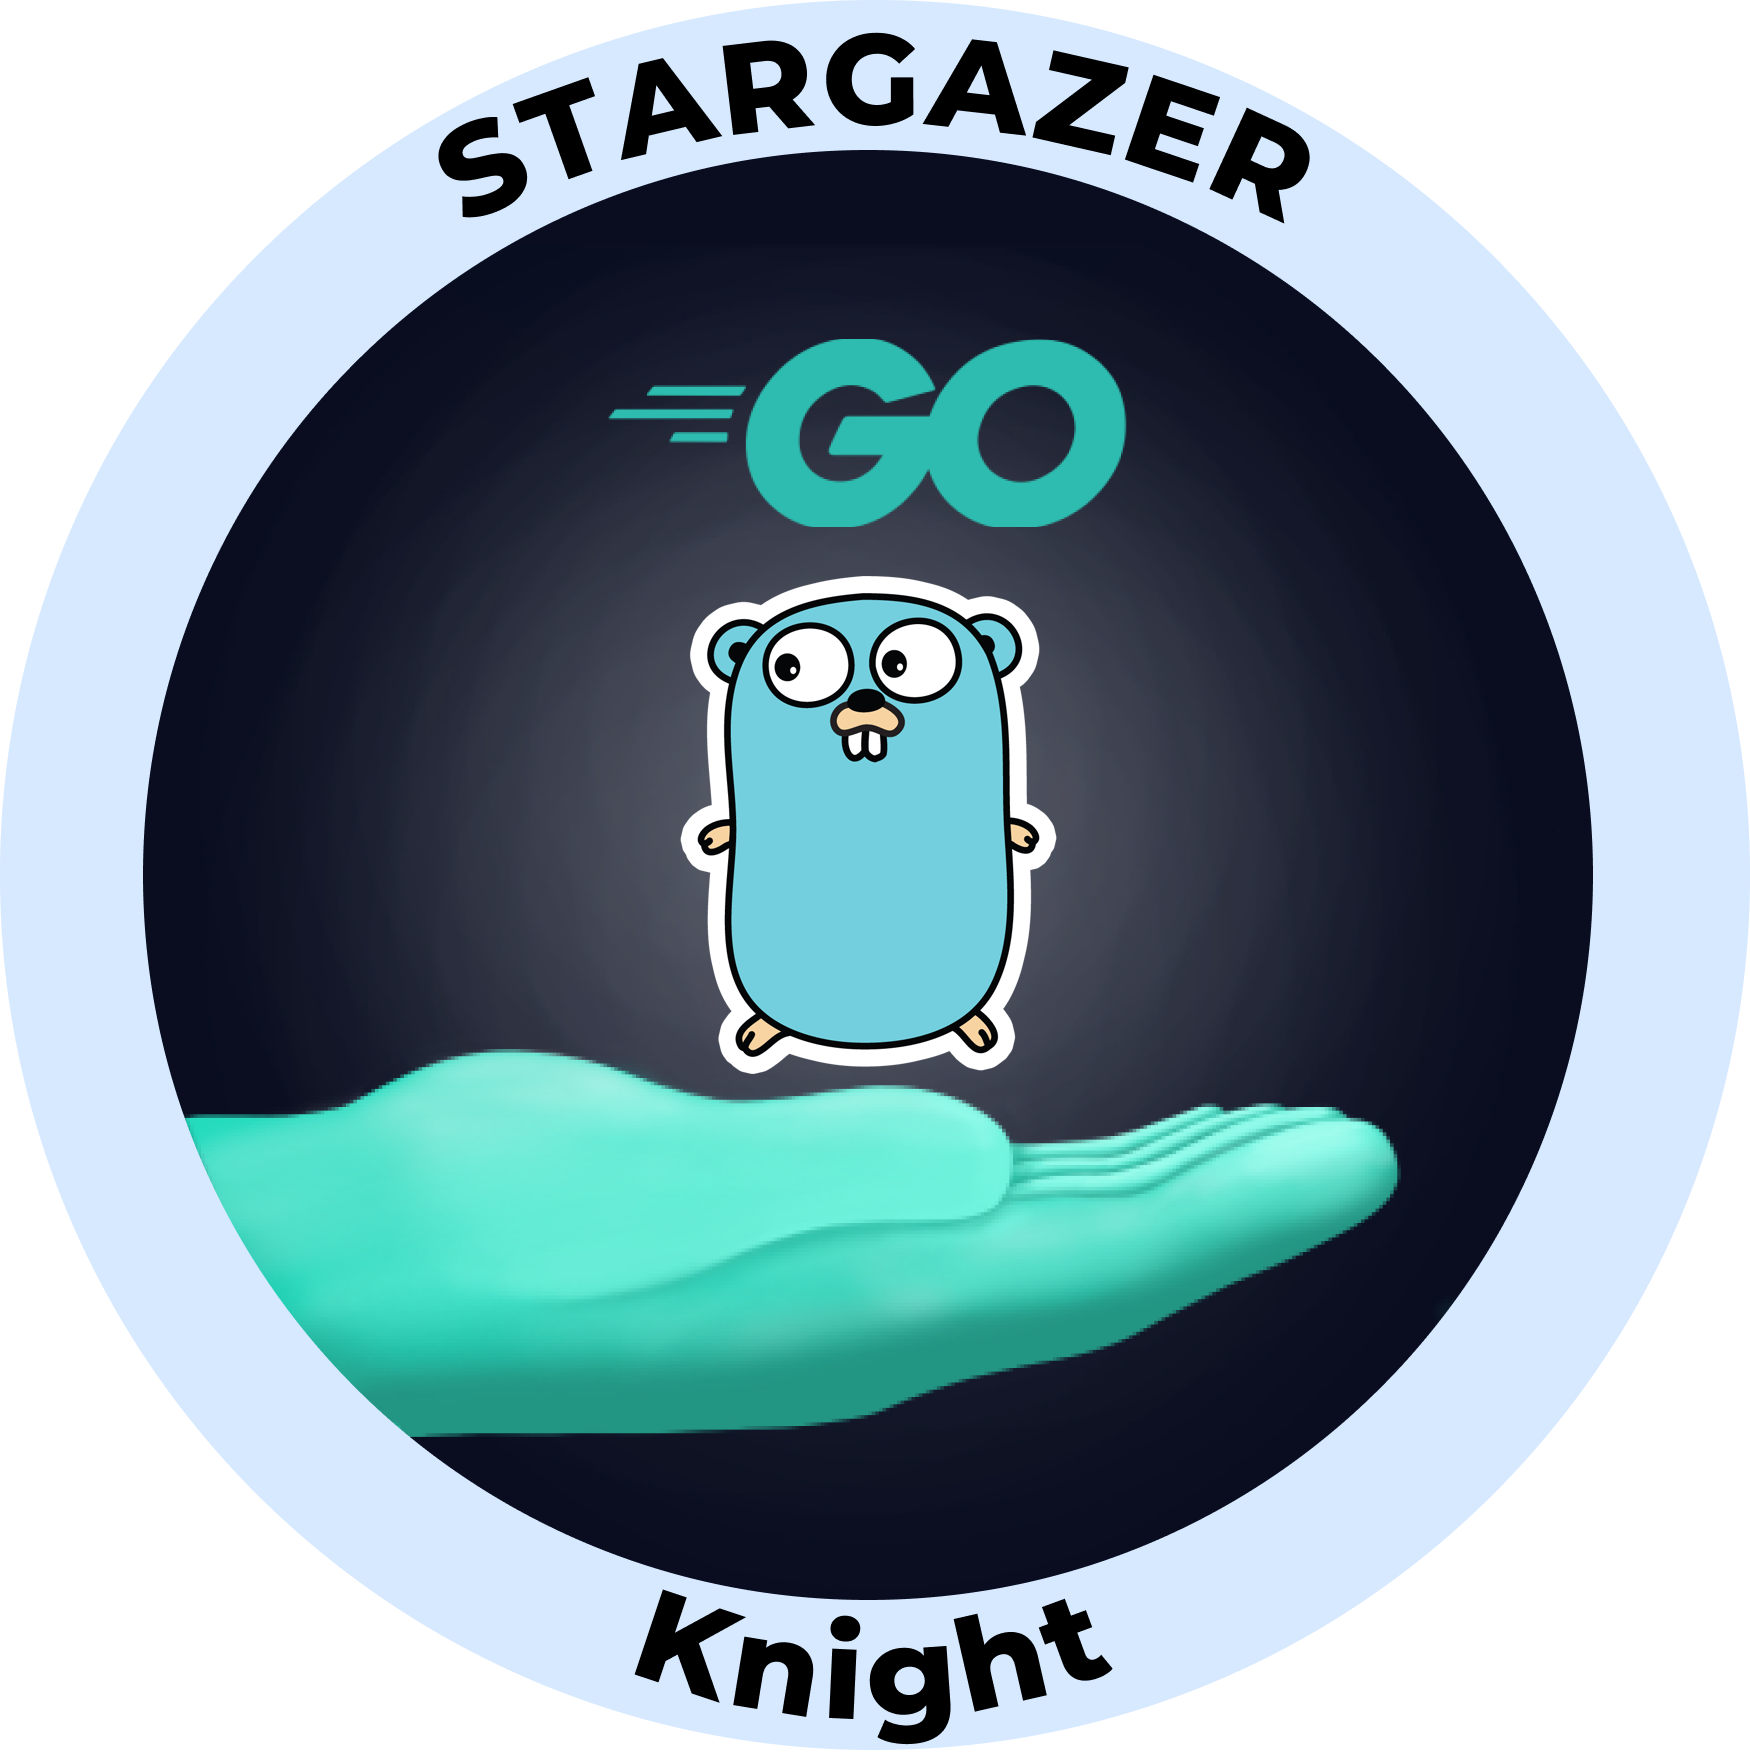 Web3 Badge | Stargazer: Go Knight logo